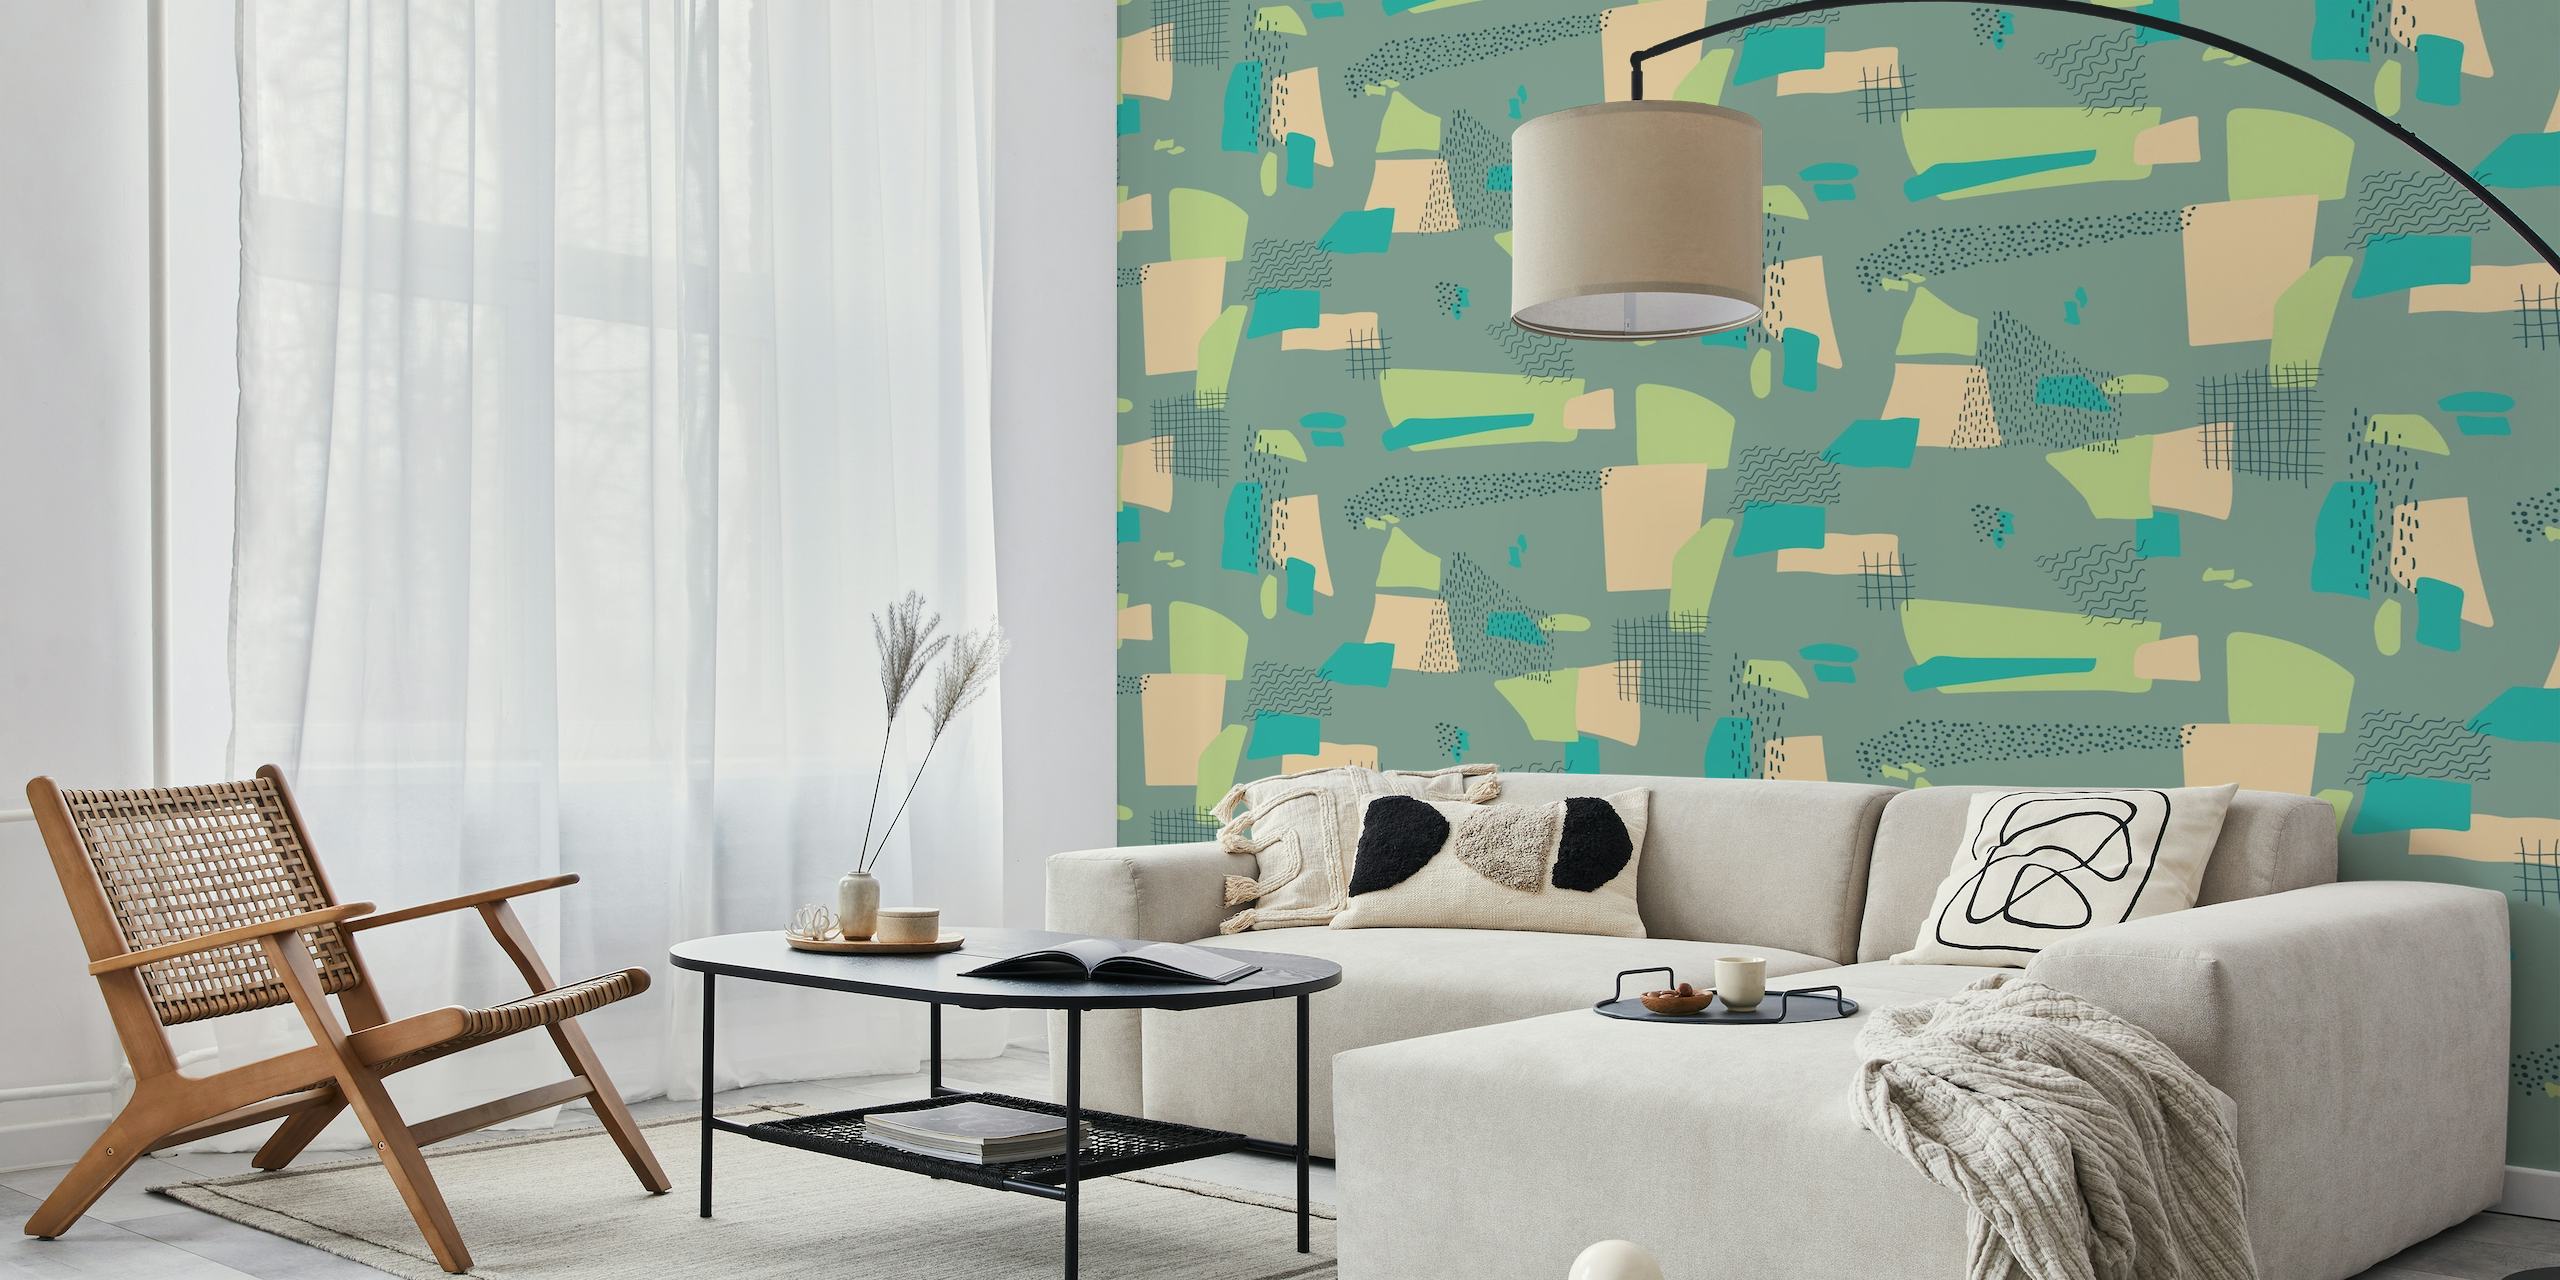 Papier peint mural de formes géométriques vertes abstraites pour une décoration intérieure moderne